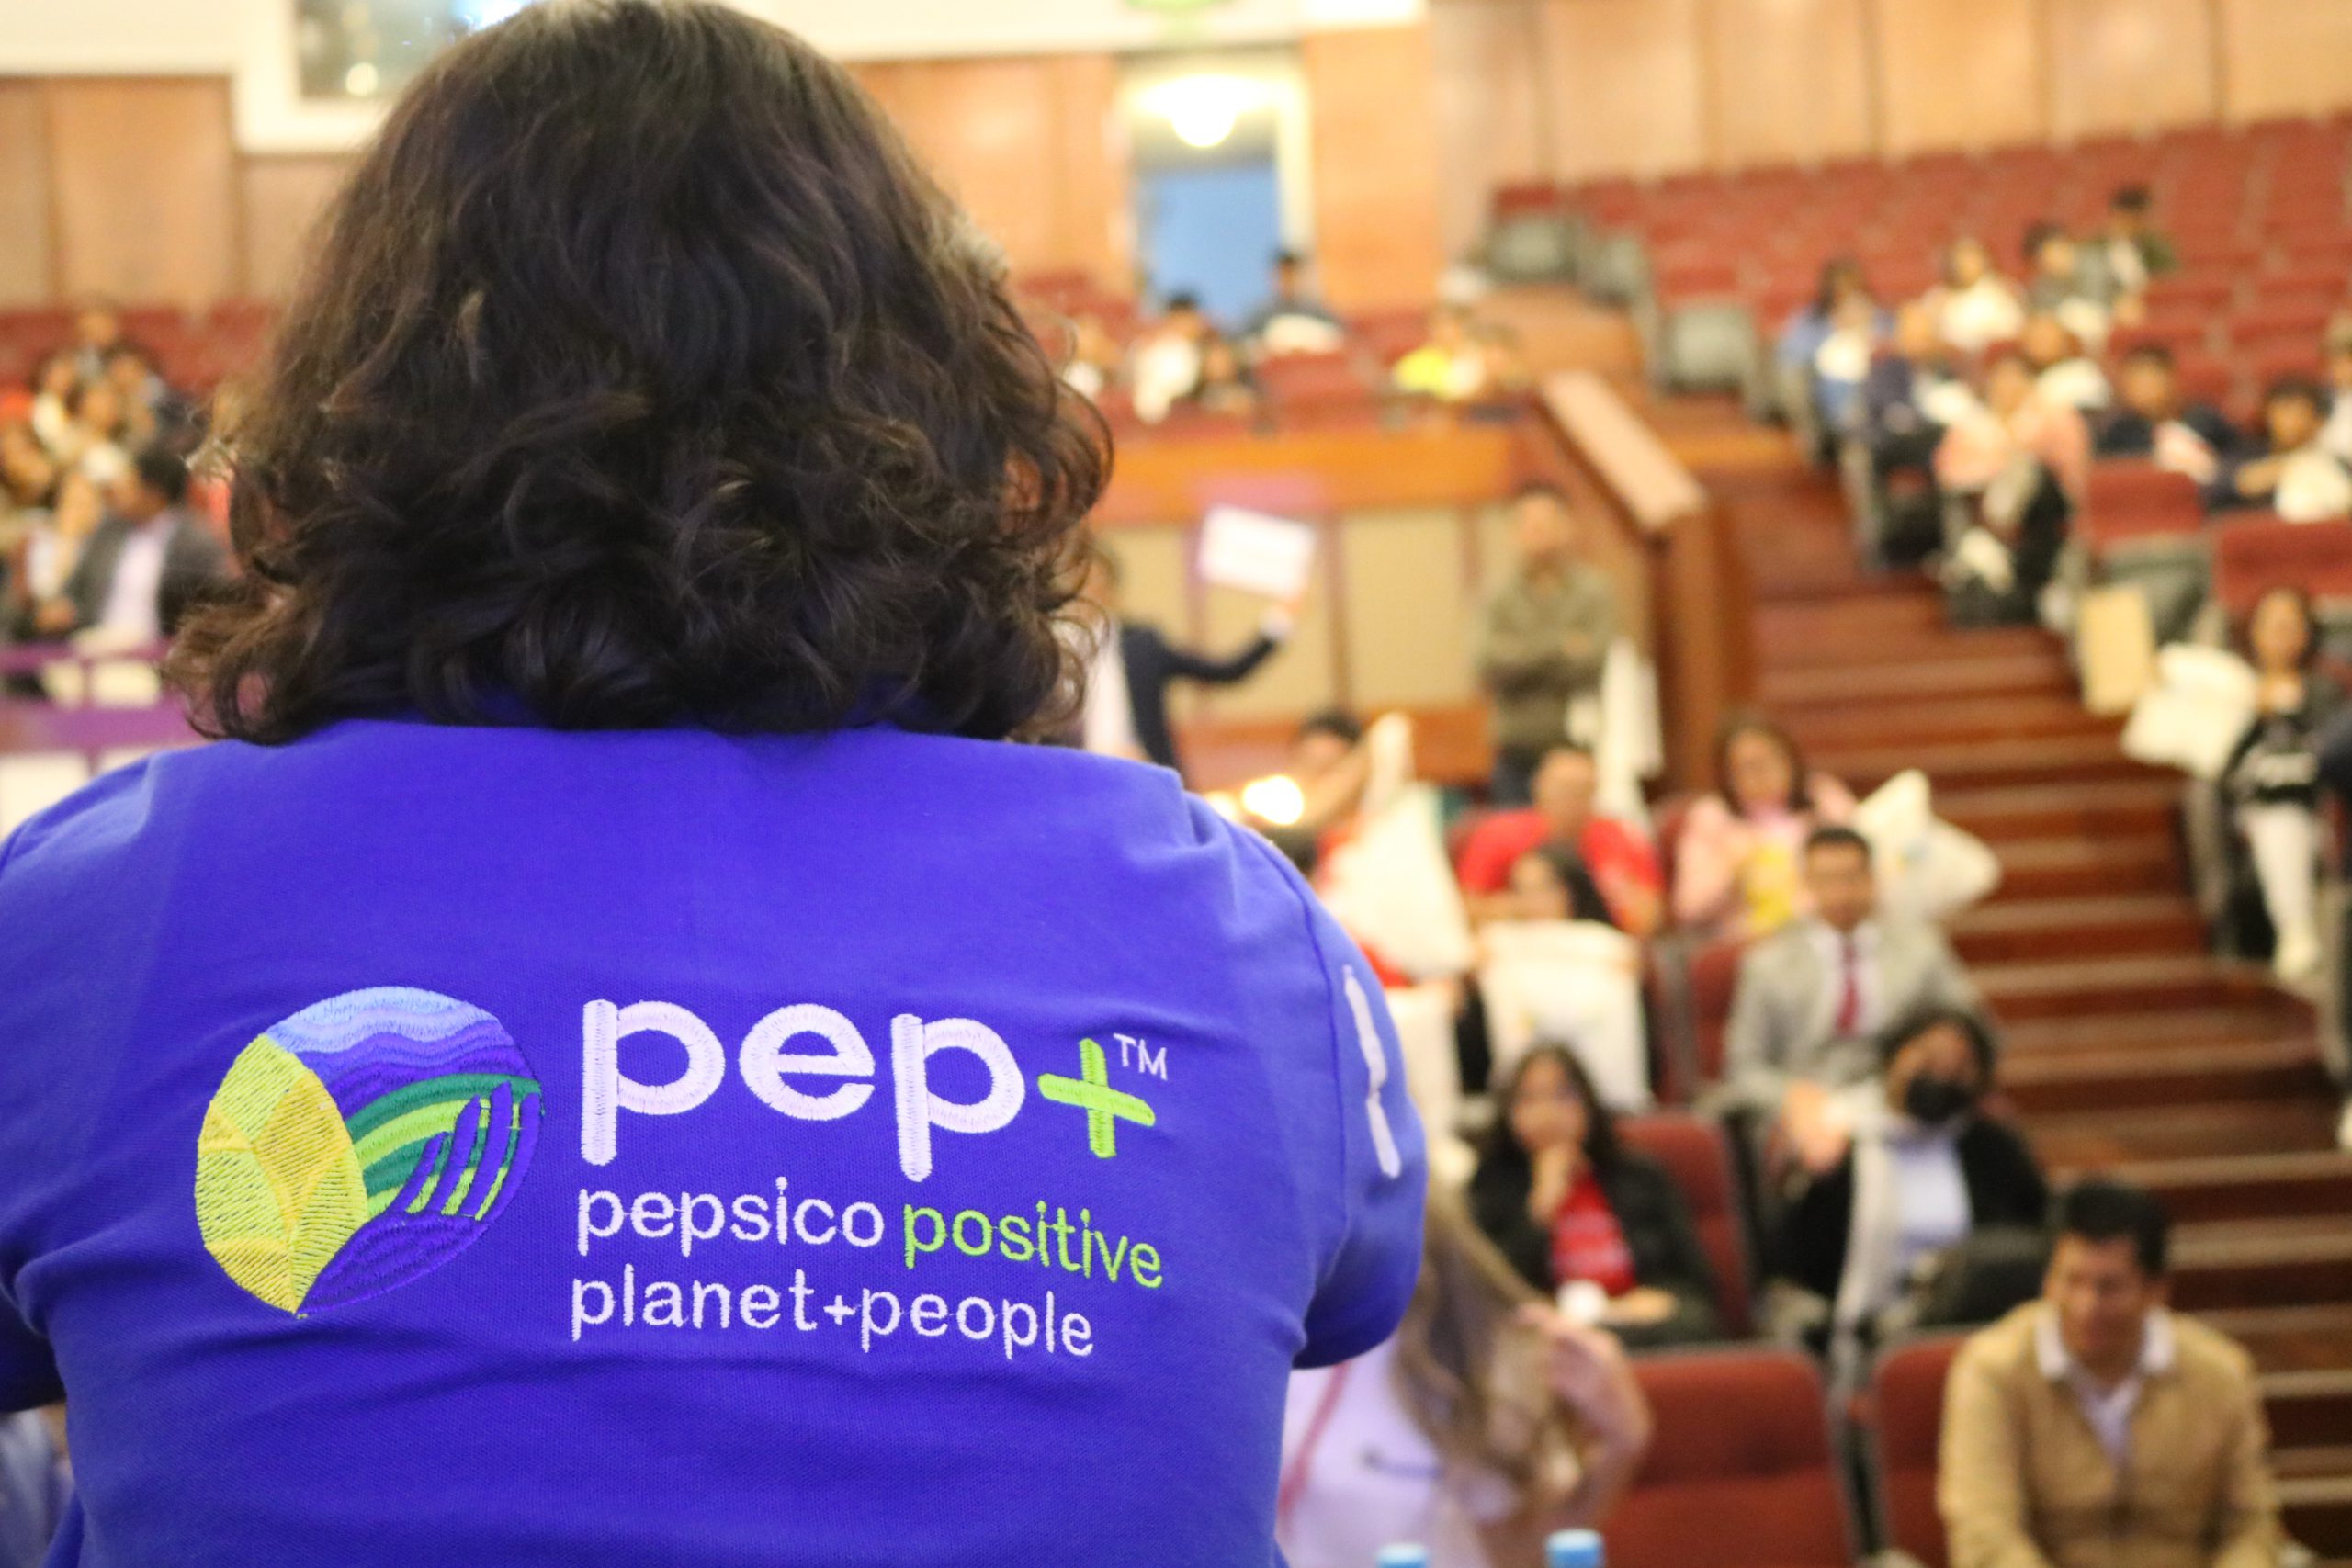 AIESEC Perú